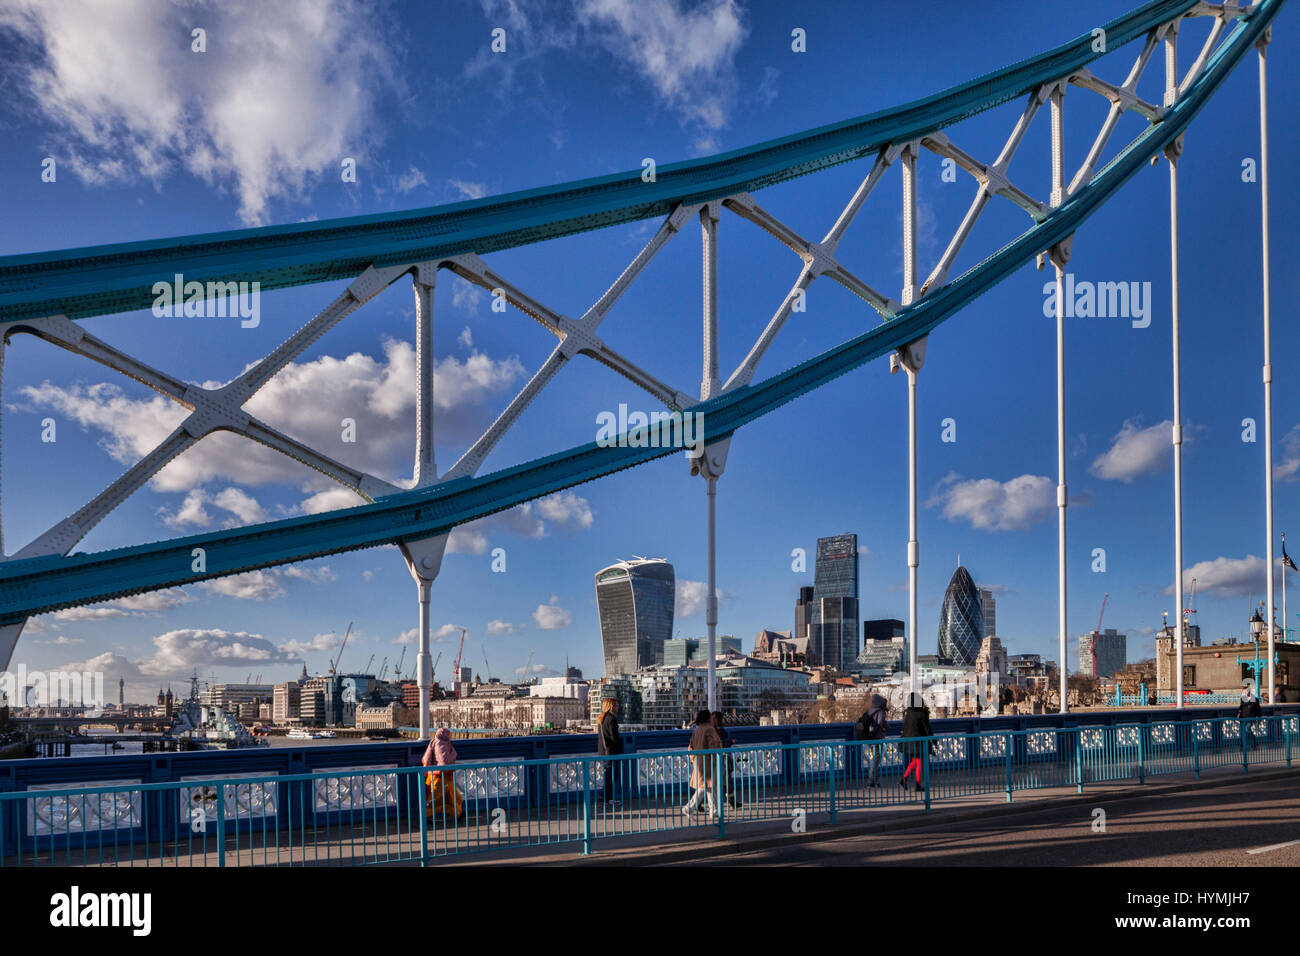 Toits de Londres avec le talkie walkie, la râpe à fromage et le Gherkin, vu à travers la superstructure du Tower Bridge. Banque D'Images